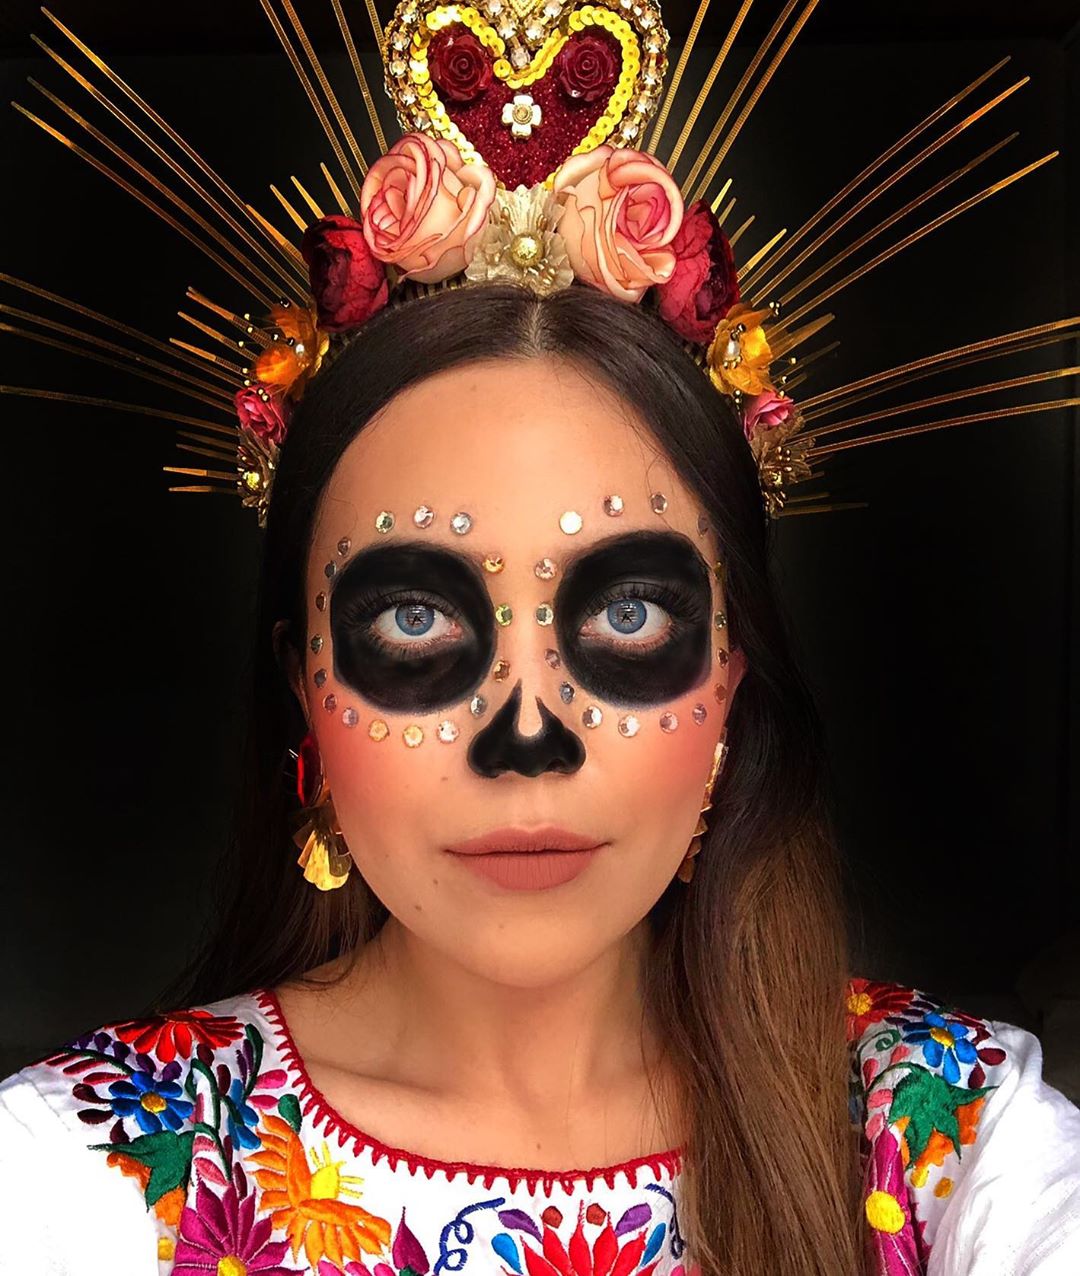 privado Conmemorativo aves de corral Disfraces mexicanos para Día de Muertos 2019